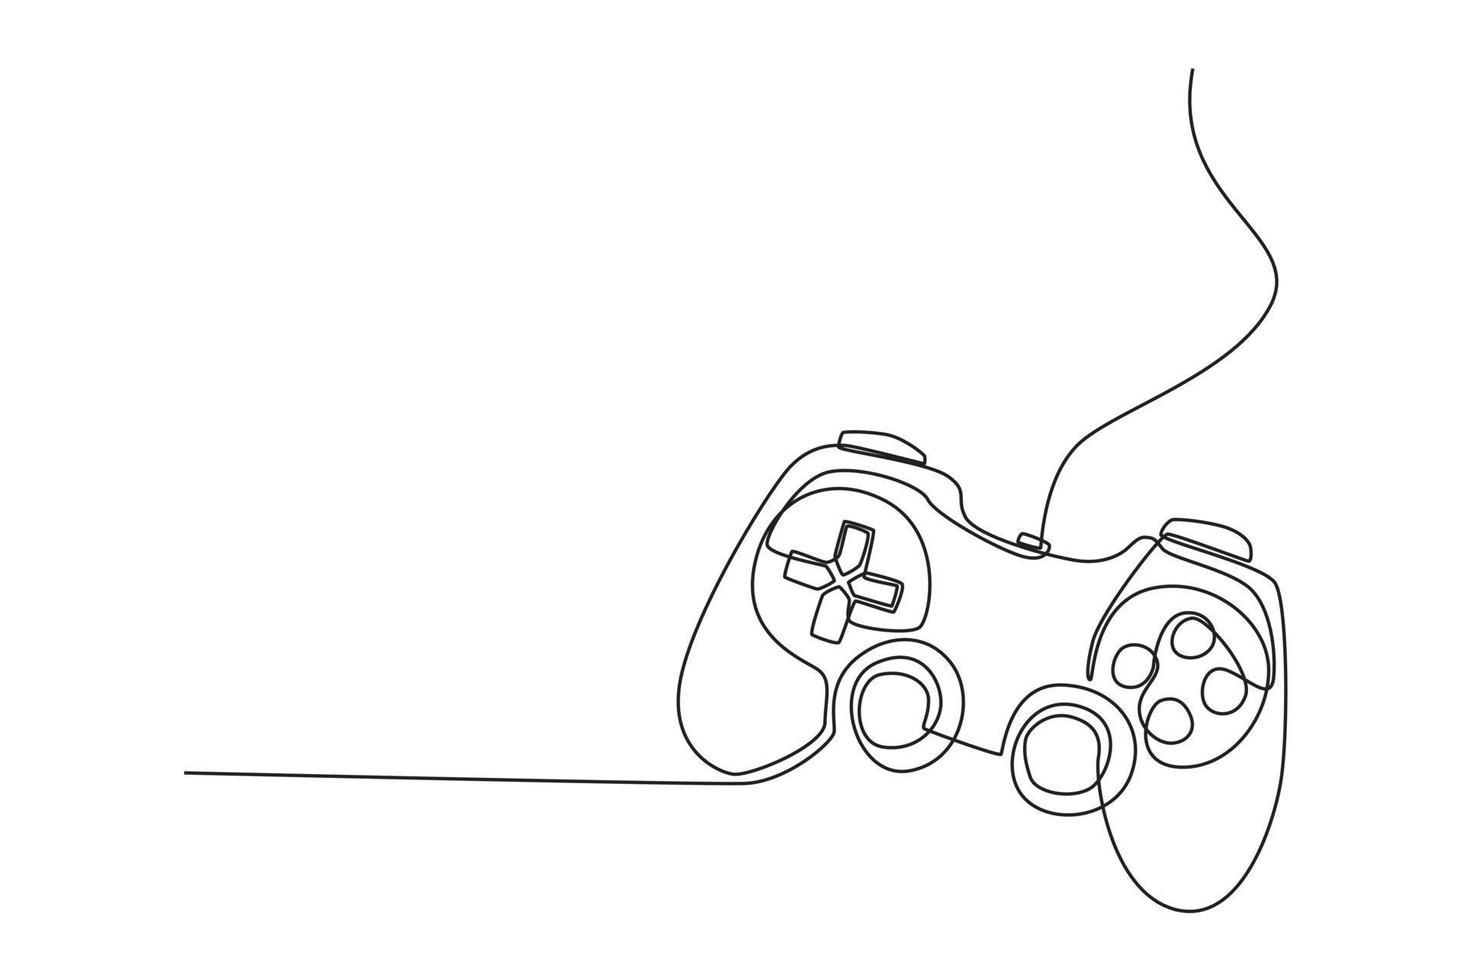 un disegno a linea continua del segno di stile lineare del joystick per dispositivi mobili. concetto di attrezzatura da gioco. illustrazione grafica vettoriale di disegno a linea singola.